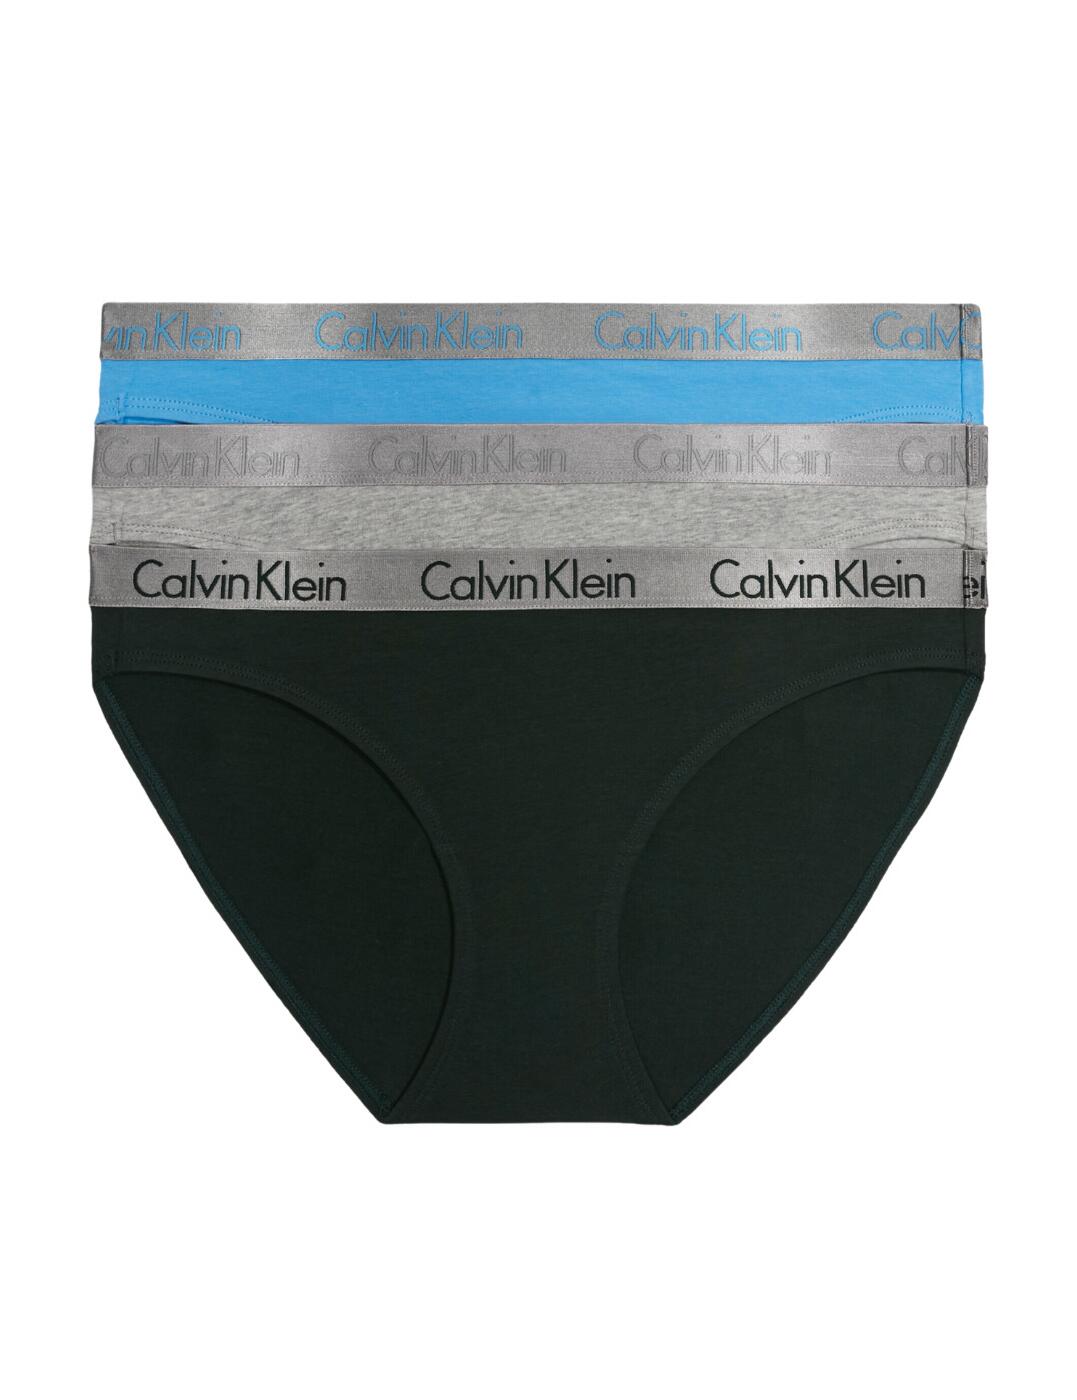  Calvin Klein Radiant Cotton 3 Pack Briefs Grey Heather/Blue/Green